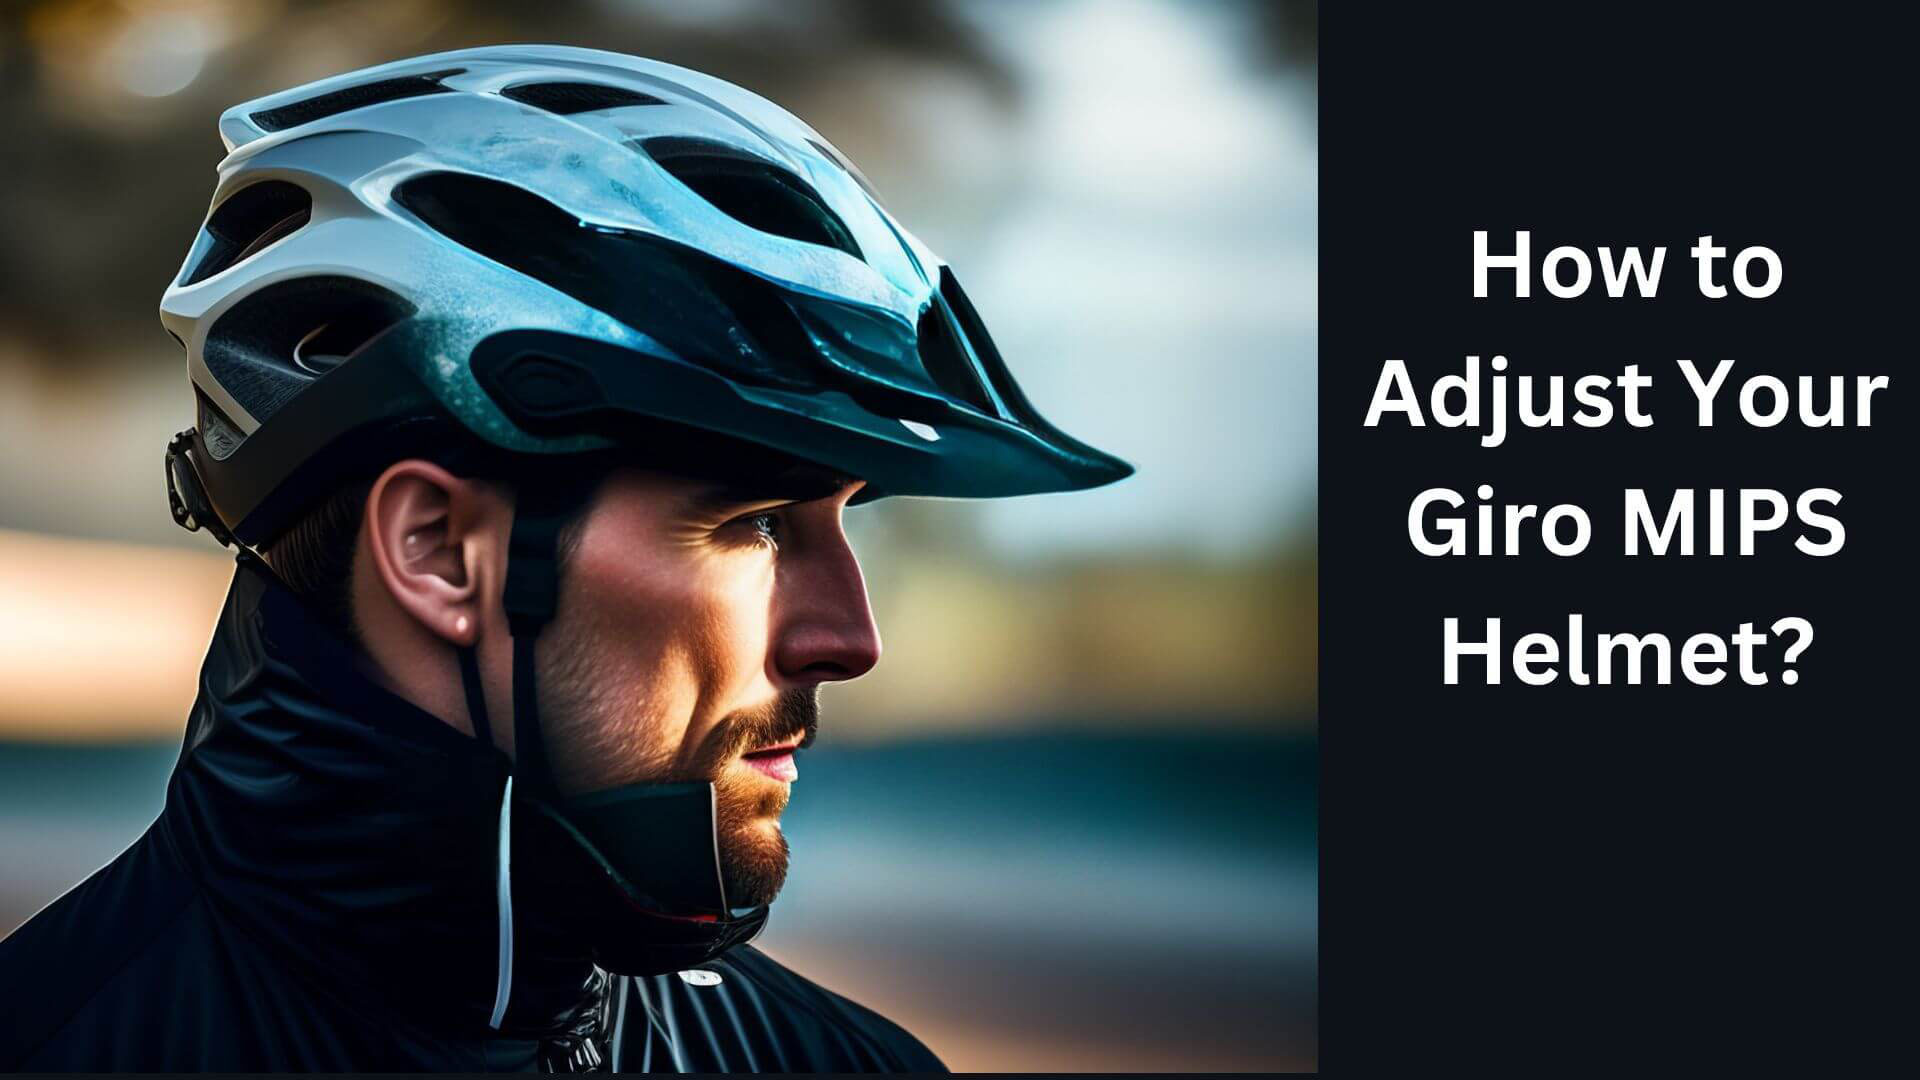 How to Adjust Your Giro MIPS Helmet?